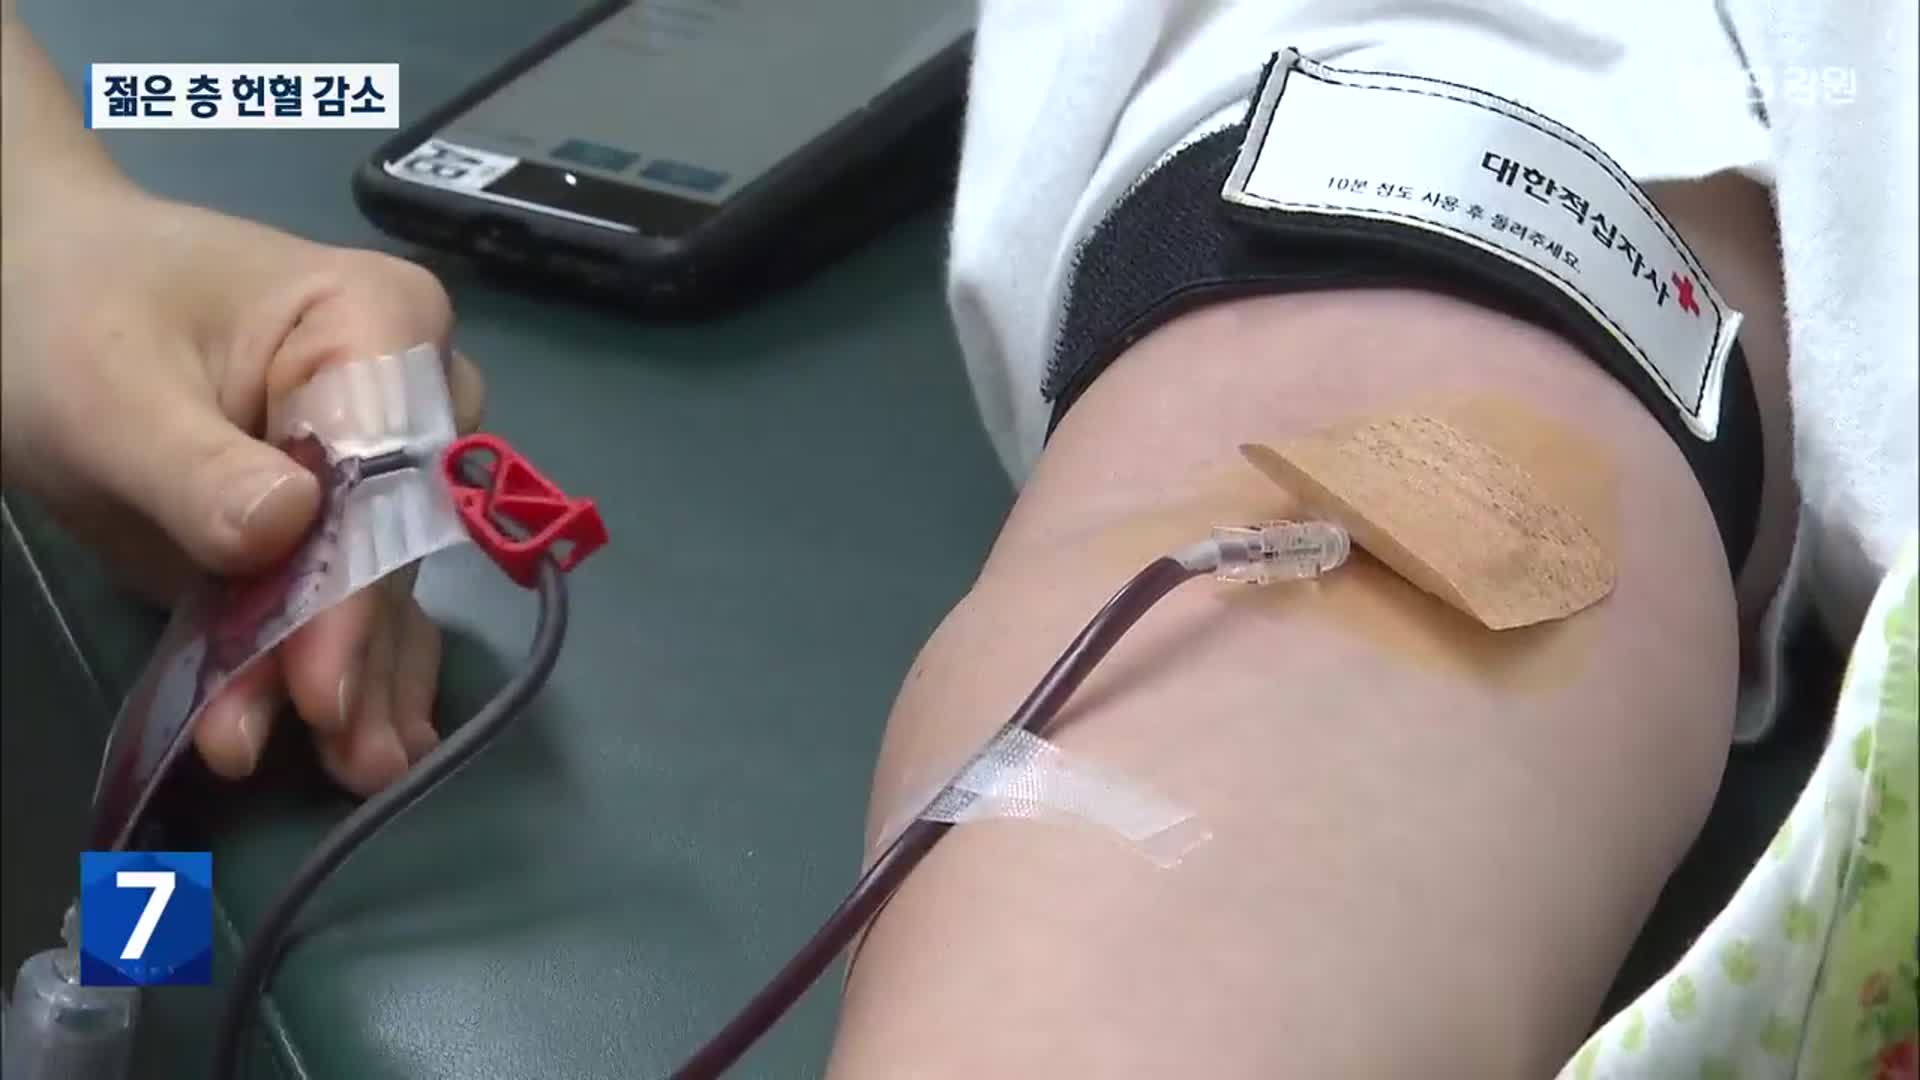 젊은층 헌혈 감소세…공직자들 ‘헌혈 릴레이’ 나서